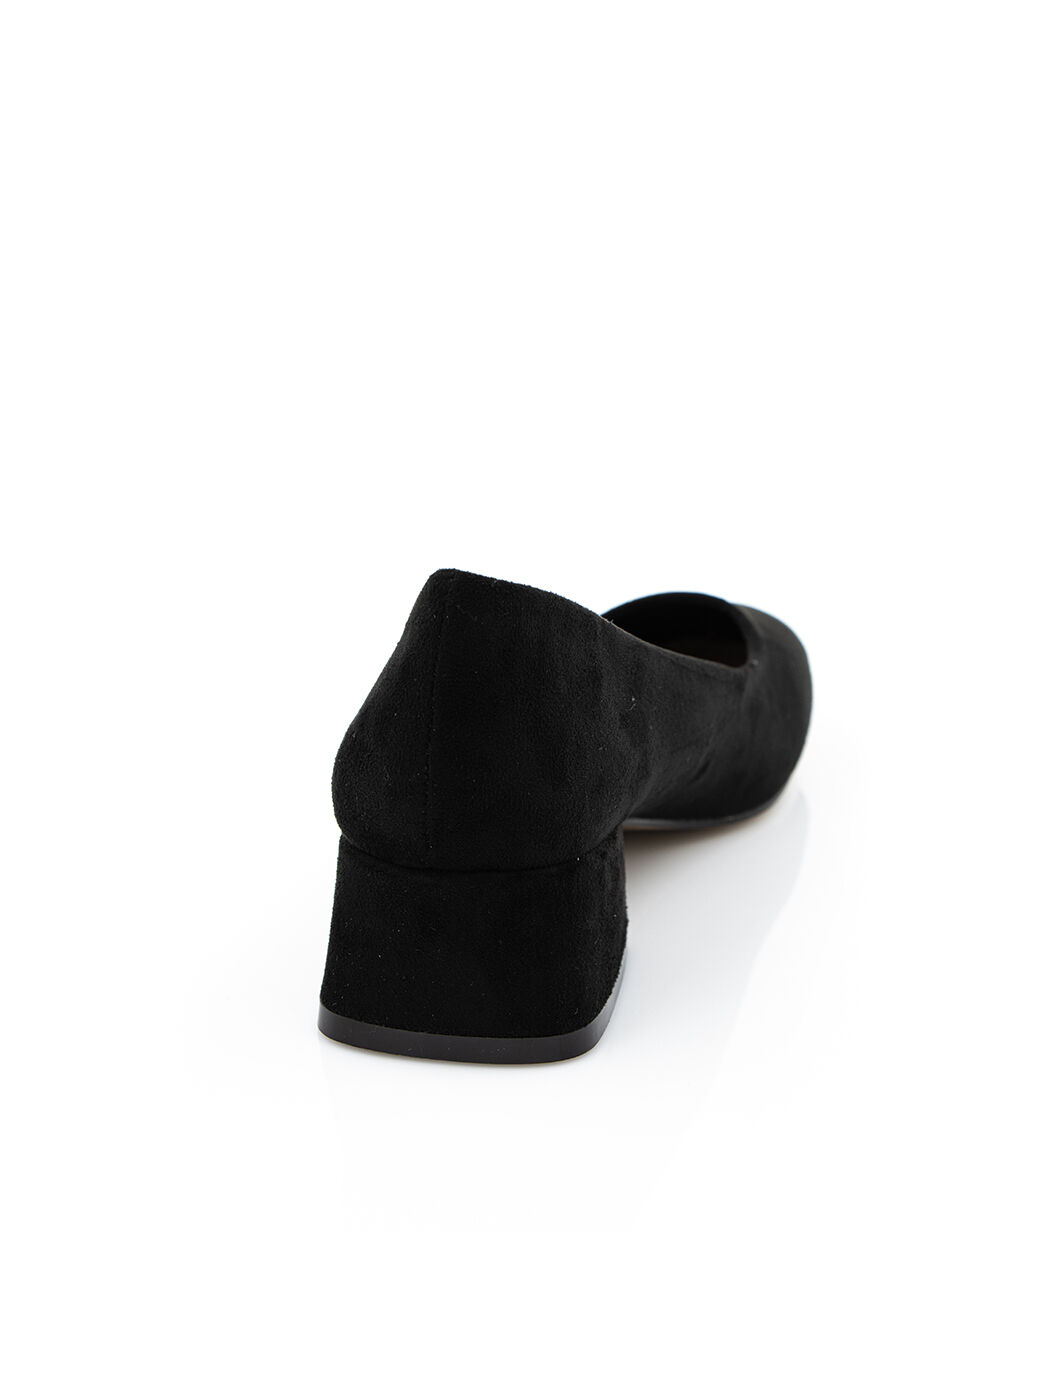 Туфли женские черные экозамша каблук устойчивый демисезон от производителя 1M вид 1